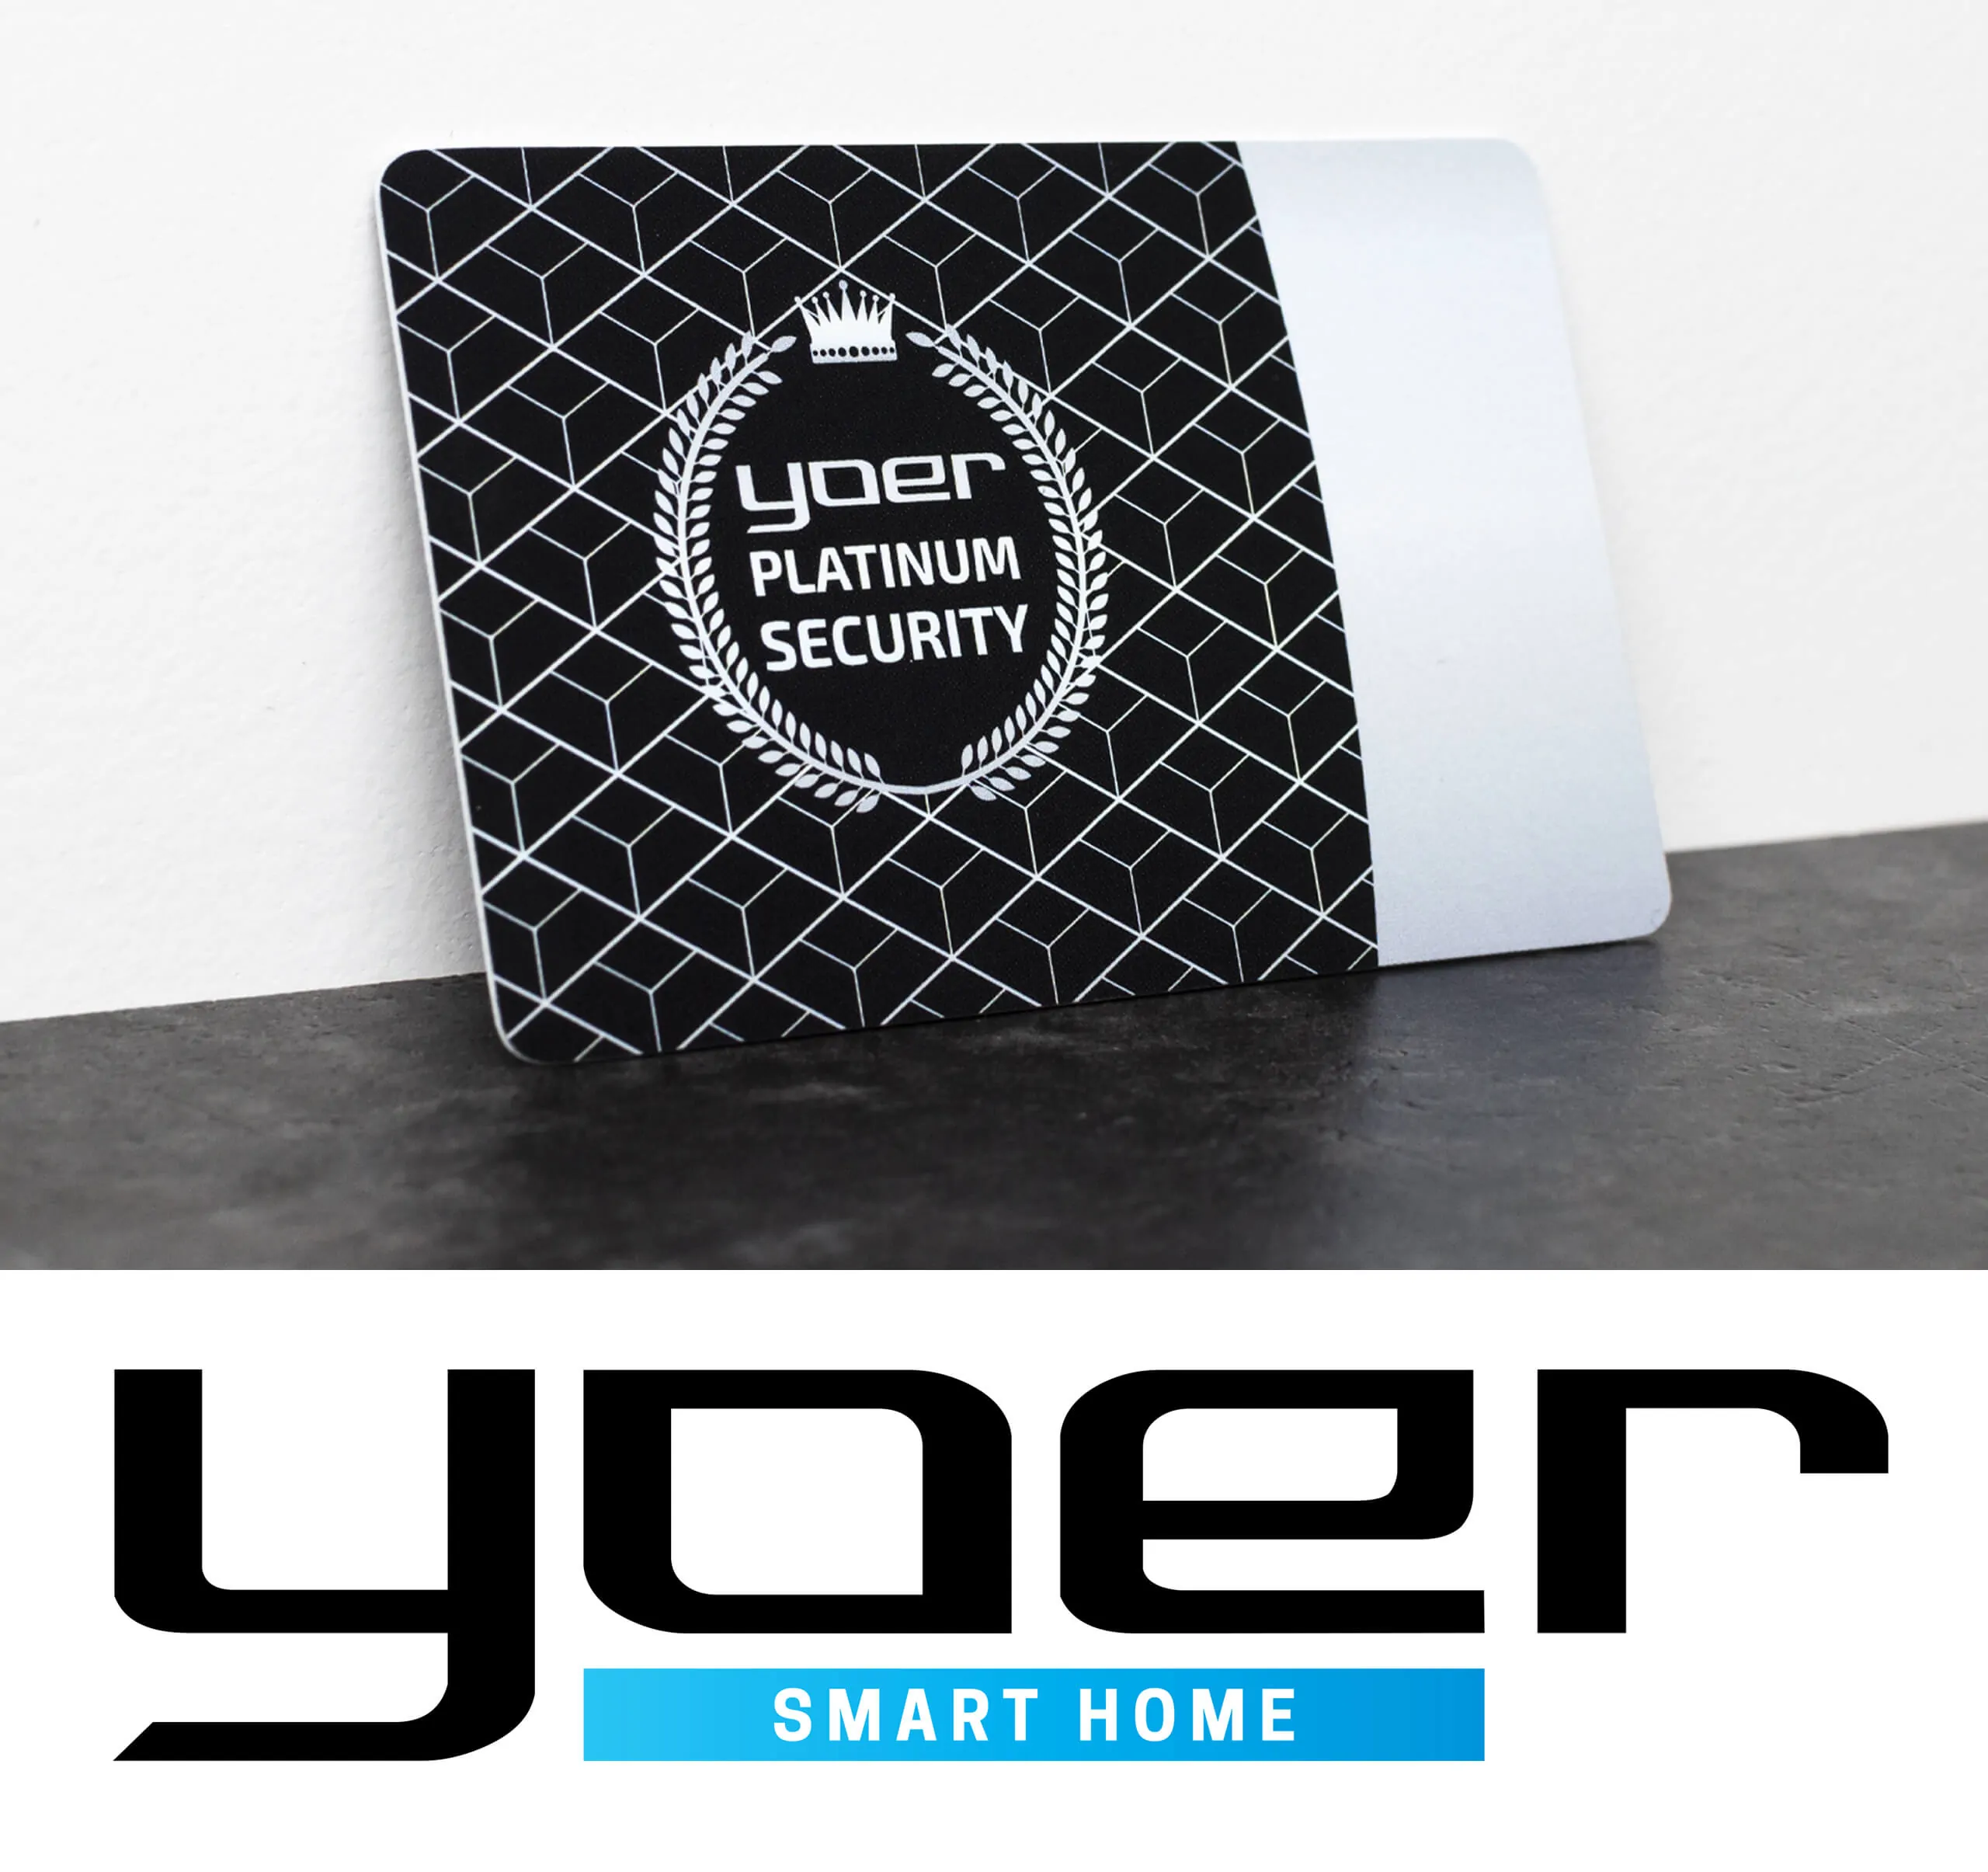 Dodatkowe Bezpieczeństwo z Yoer Platinum Secuirity